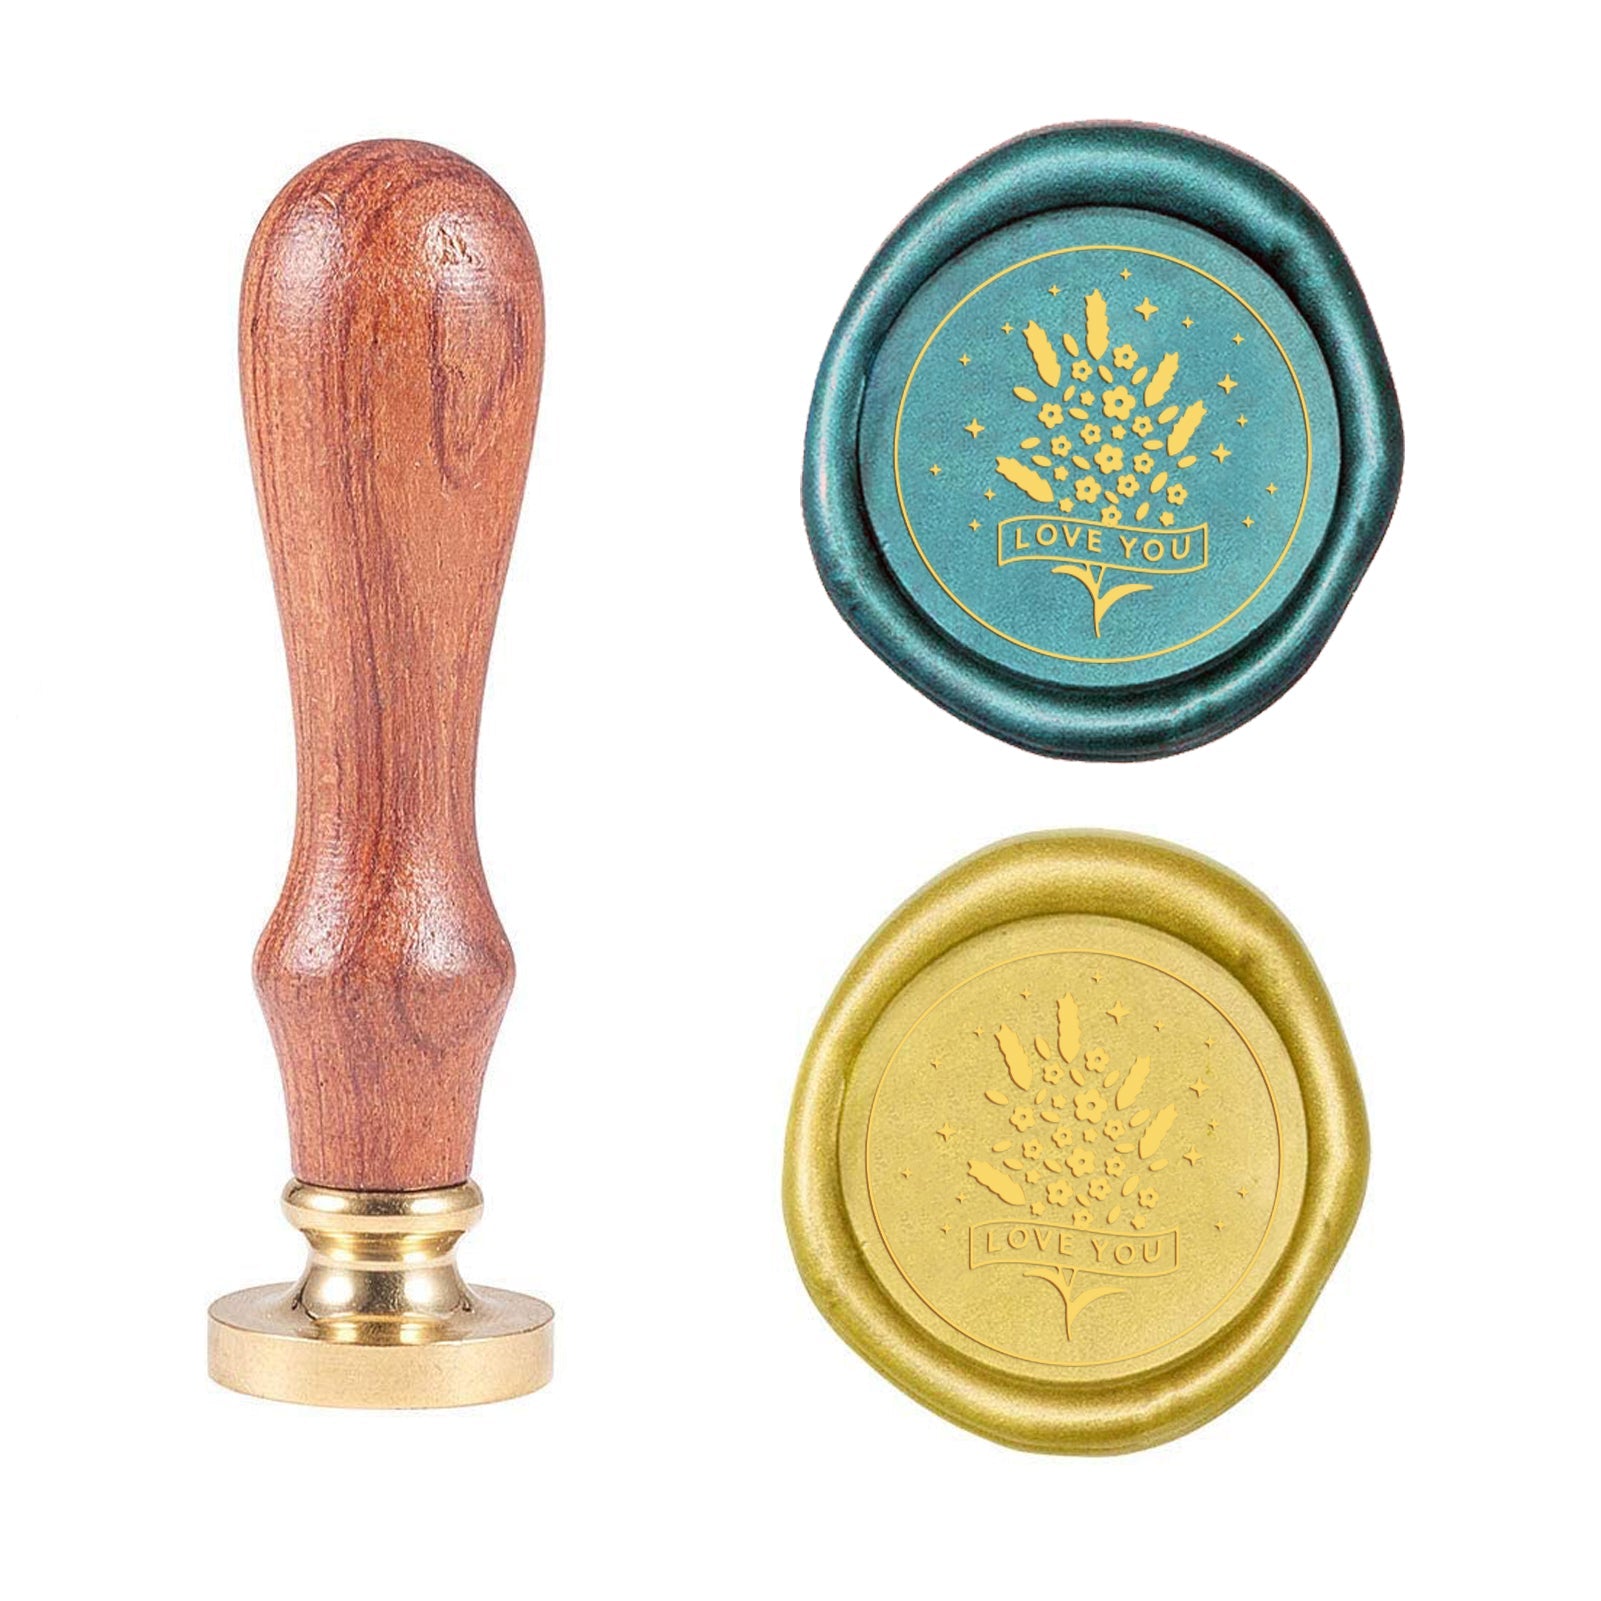 Lavender Word-2 Wood Handle Wax Seal Stamp